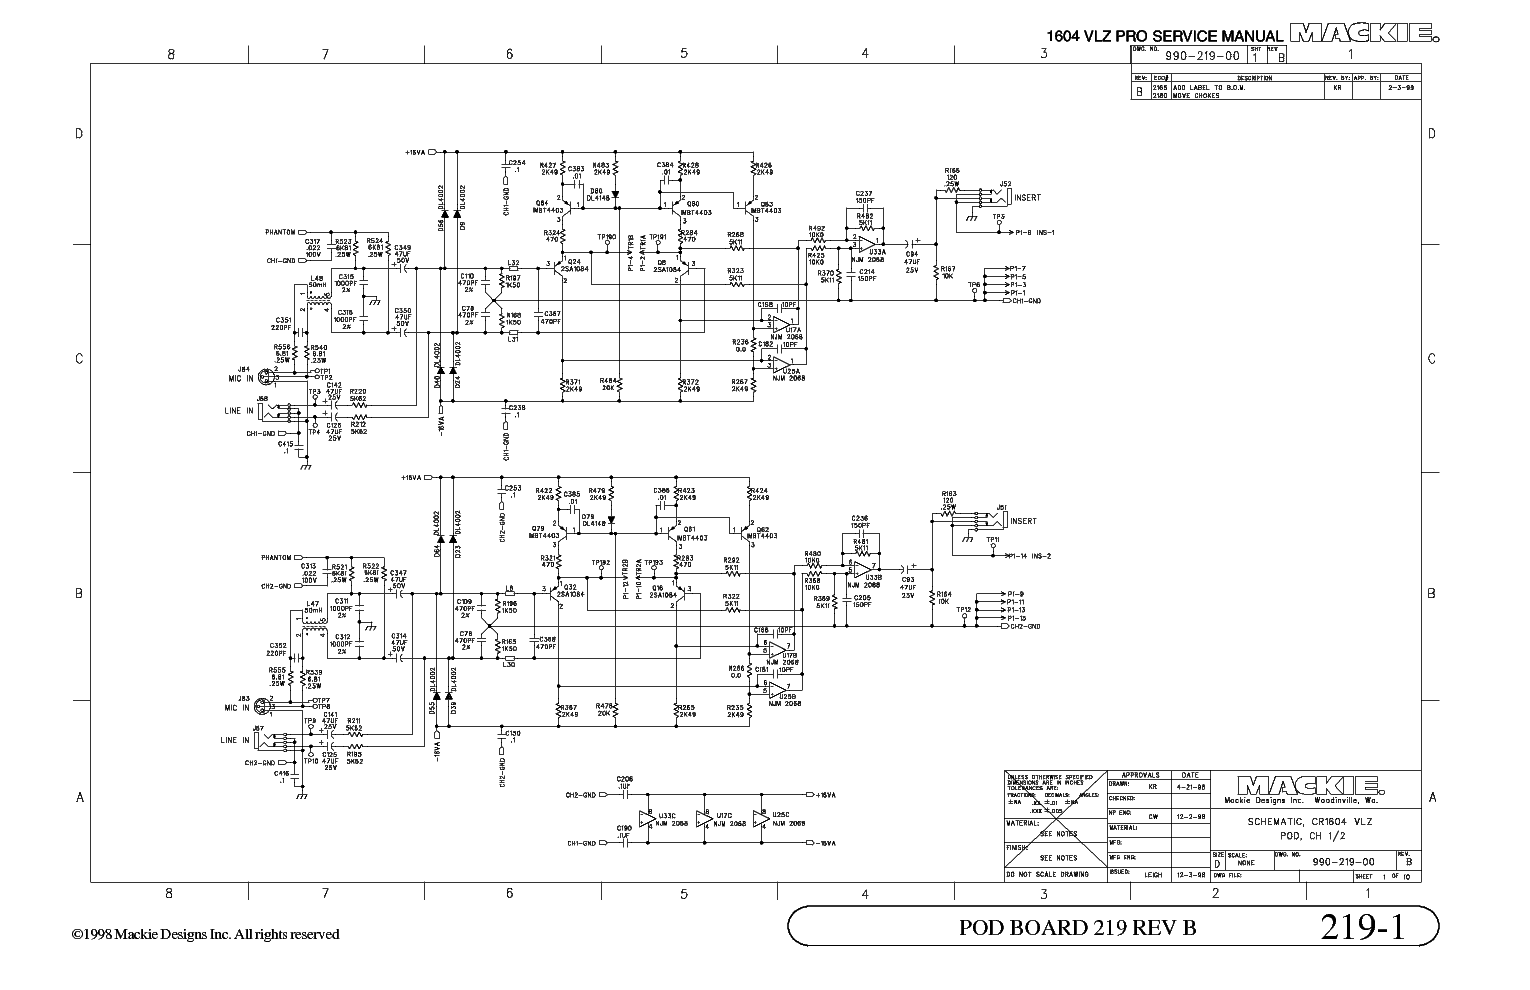 MACKIE 1604-VLZ-PRO MIXER Service Manual download, schematics, eeprom